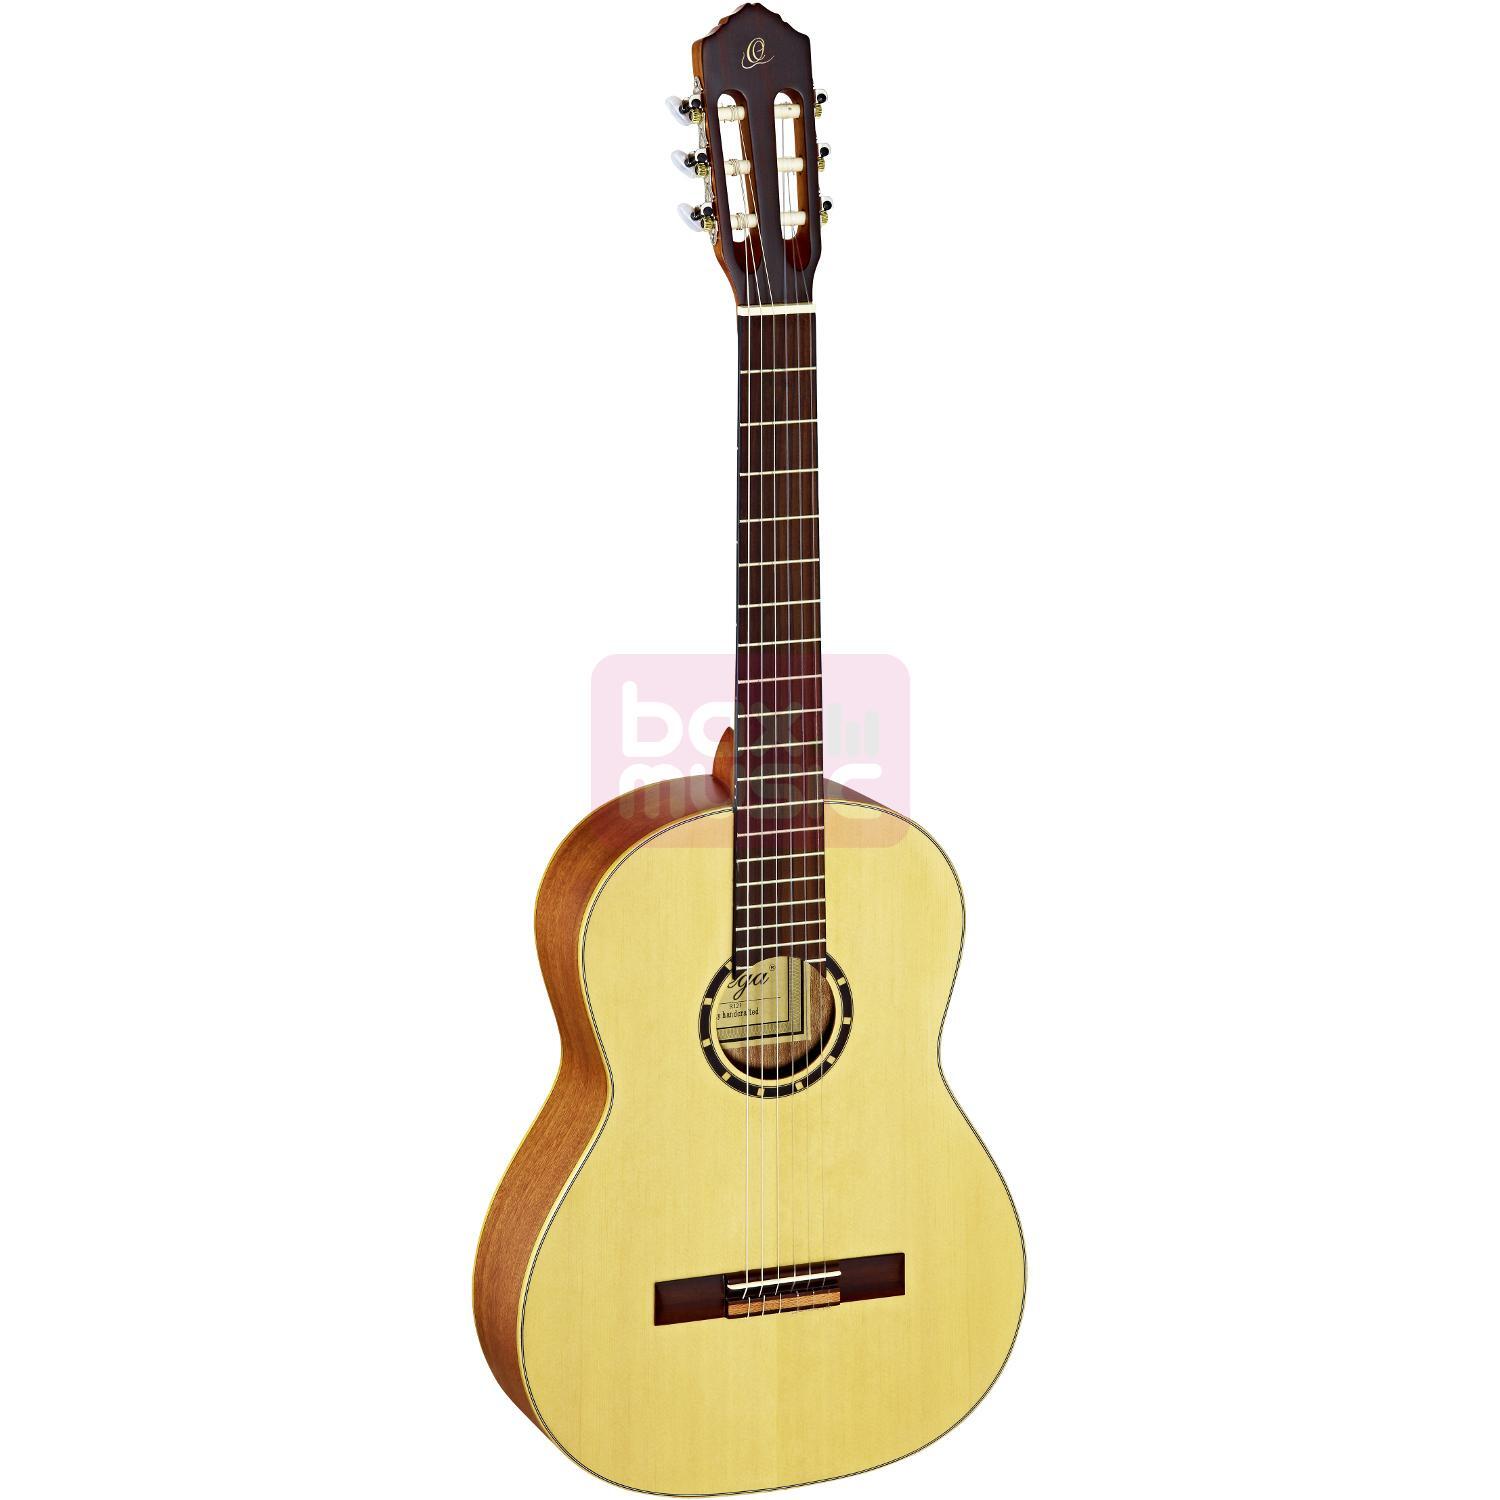 Ortega R121 klassieke gitaar naturel met gigbag